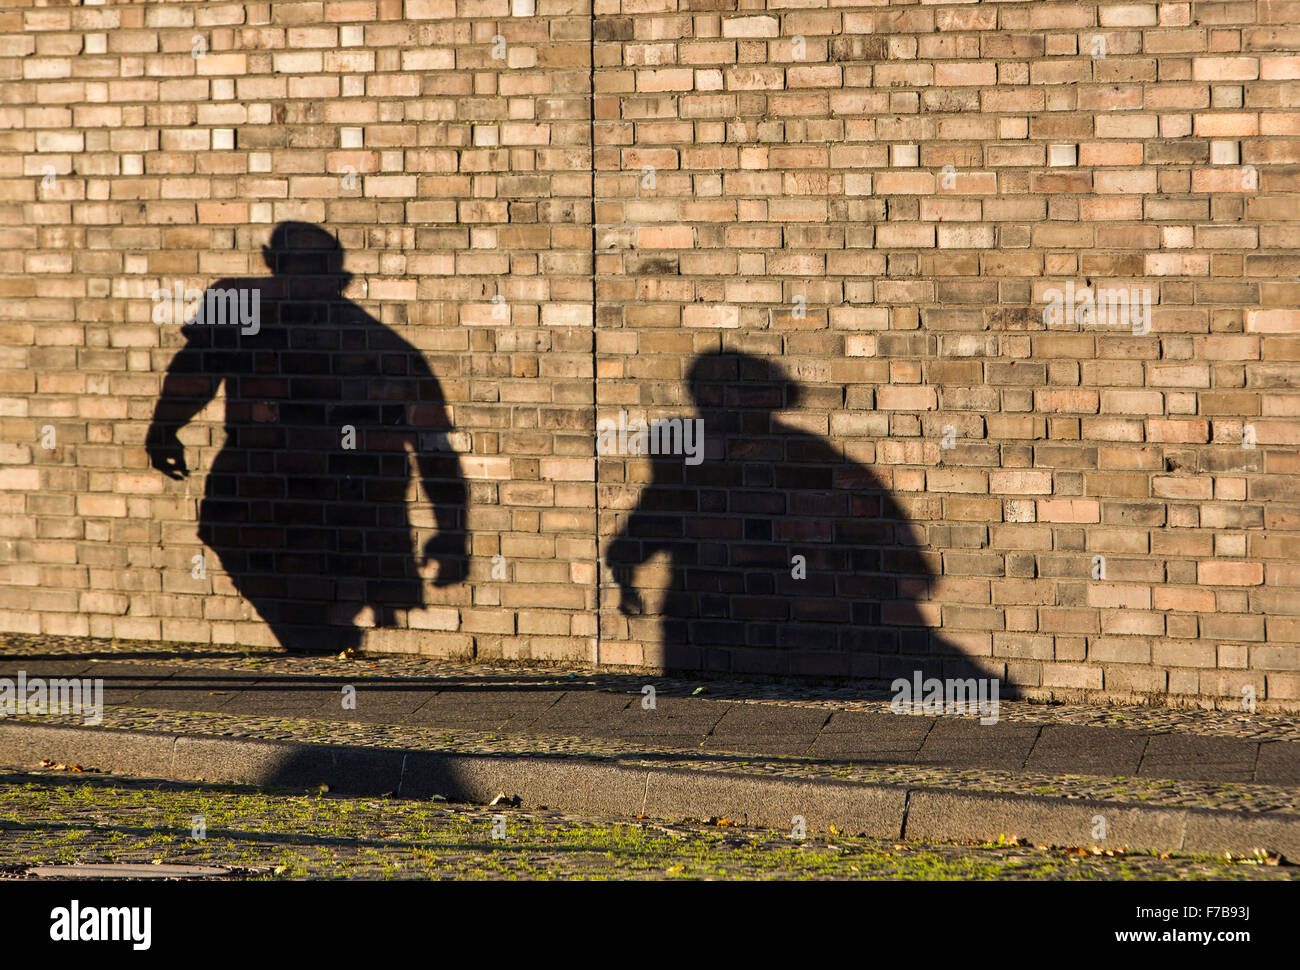 Sombra de 2 personas, hombre, mujer, sobre una pared de ladrillos Foto de stock